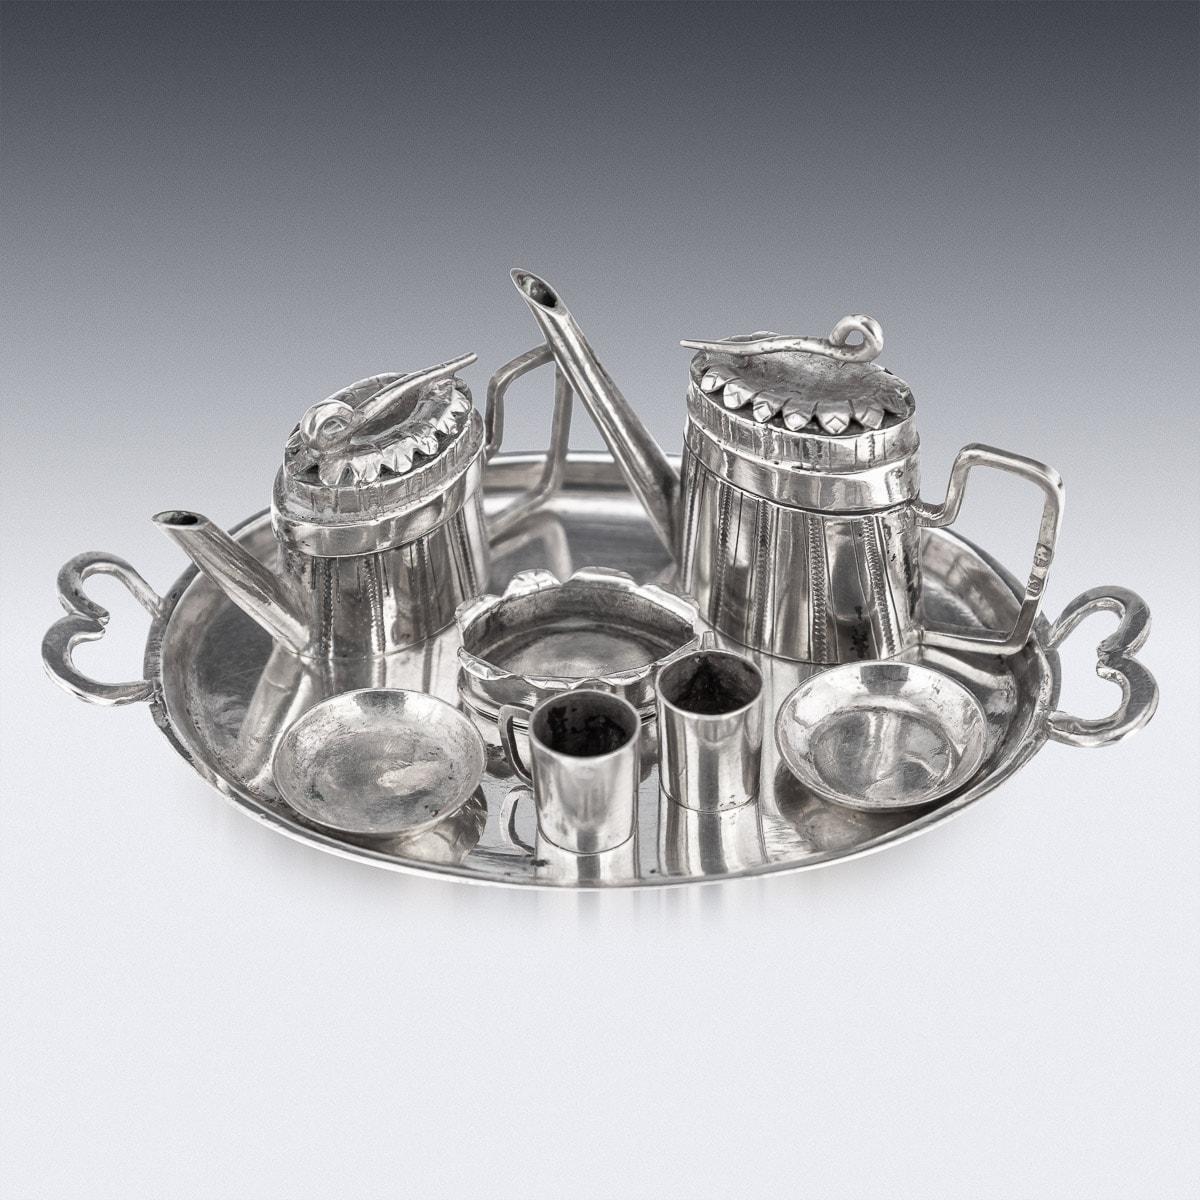 Antikes achtteiliges deutsches Tee- und Kaffeeservice aus massivem Silber aus der Mitte des 19. Jahrhunderts, bestehend aus einer Kaffeekanne, einer Teekanne, einer Zuckerdose und zwei Tassen mit Untertassen sowie einem Serviertablett. Ein sehr